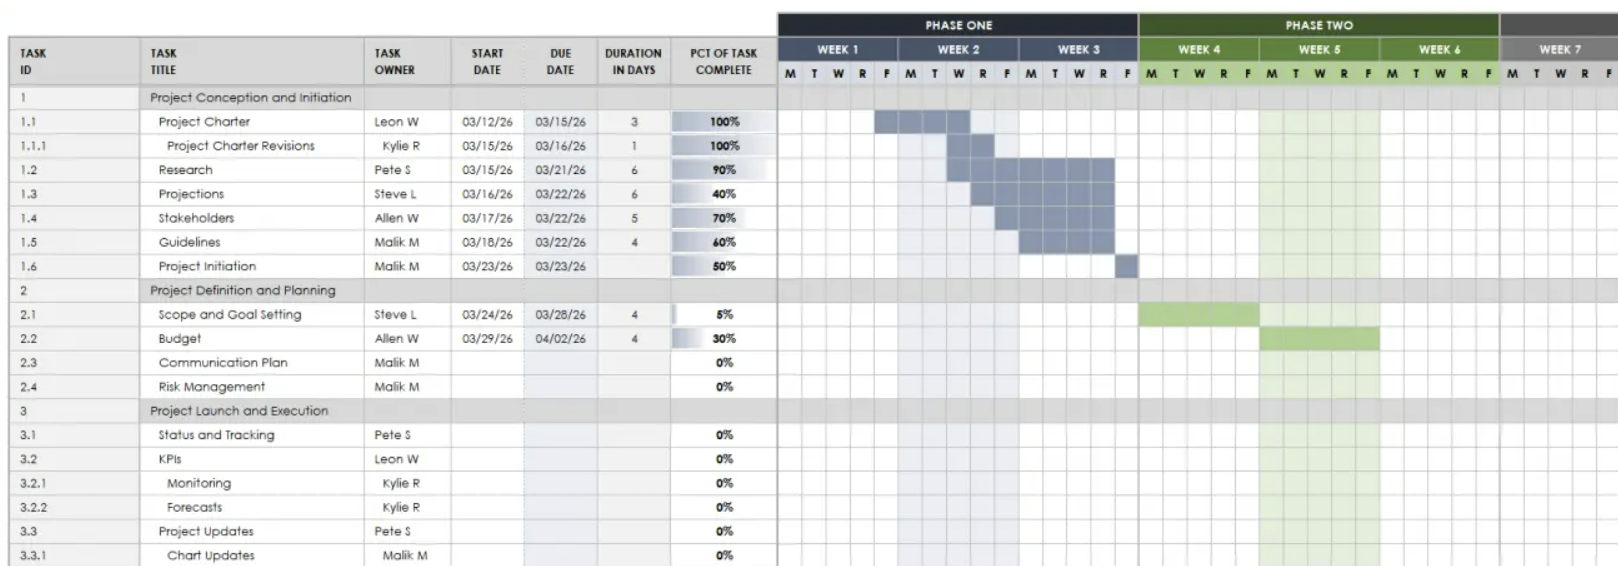 Marketing Audit - Workback Excel Image